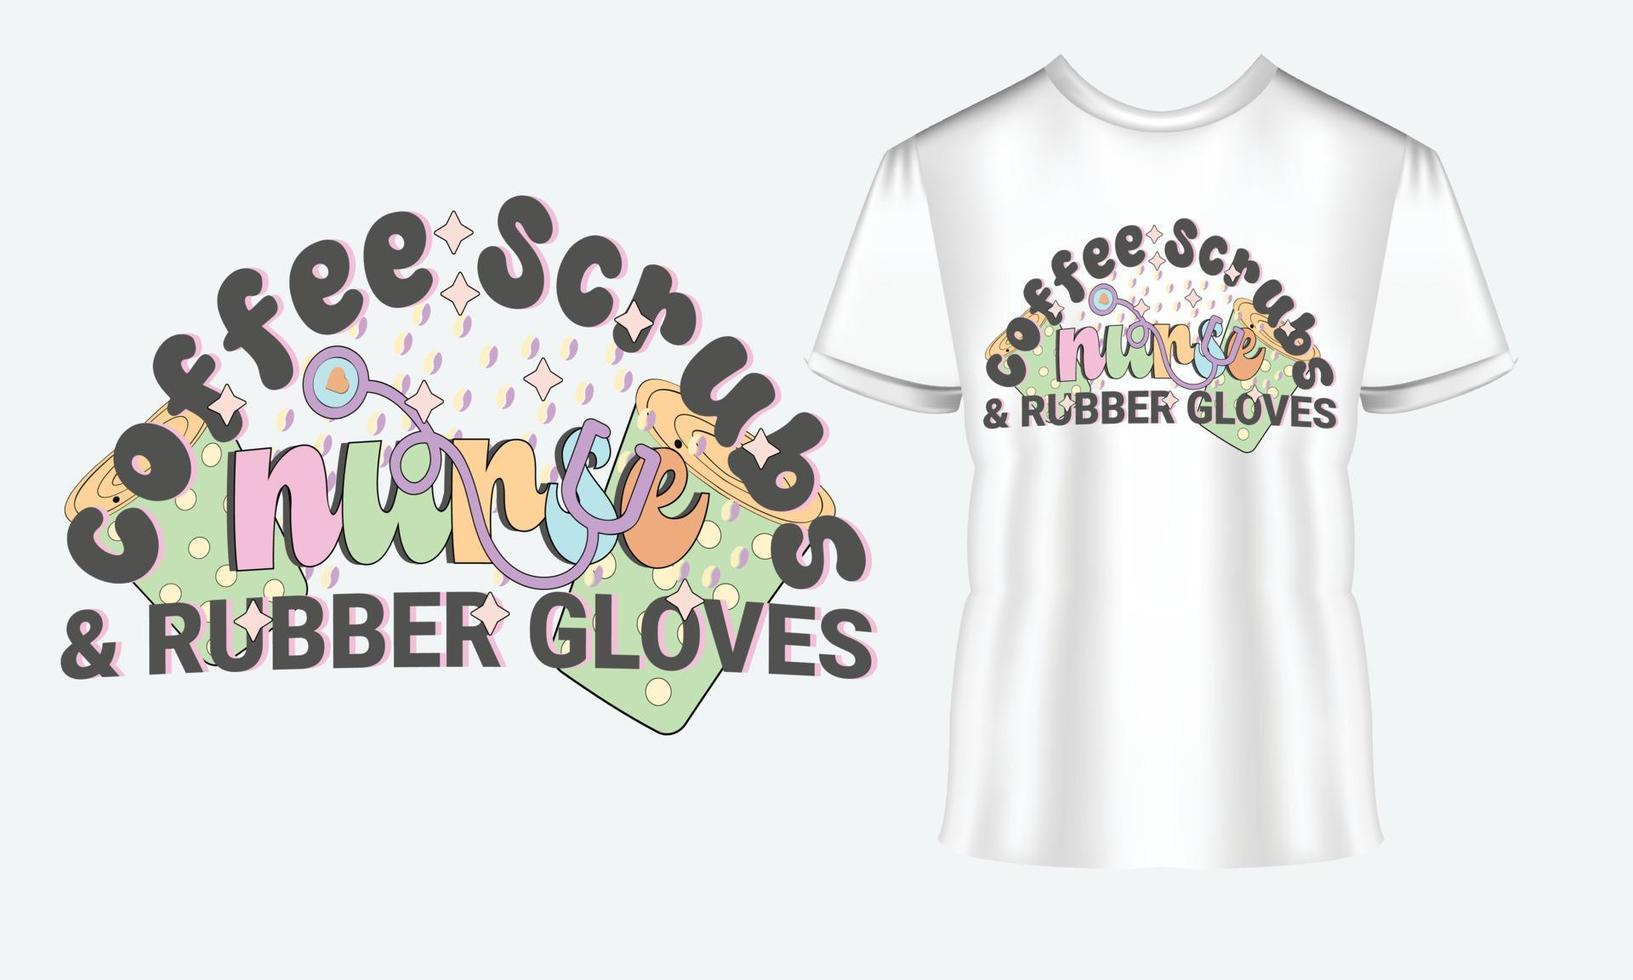 koffie scrubs rubber handschoenen vector t-shirt ontwerp, citaten ontwerp, verpleegster typografie typografie t-shirt ontwerp voor verpleging